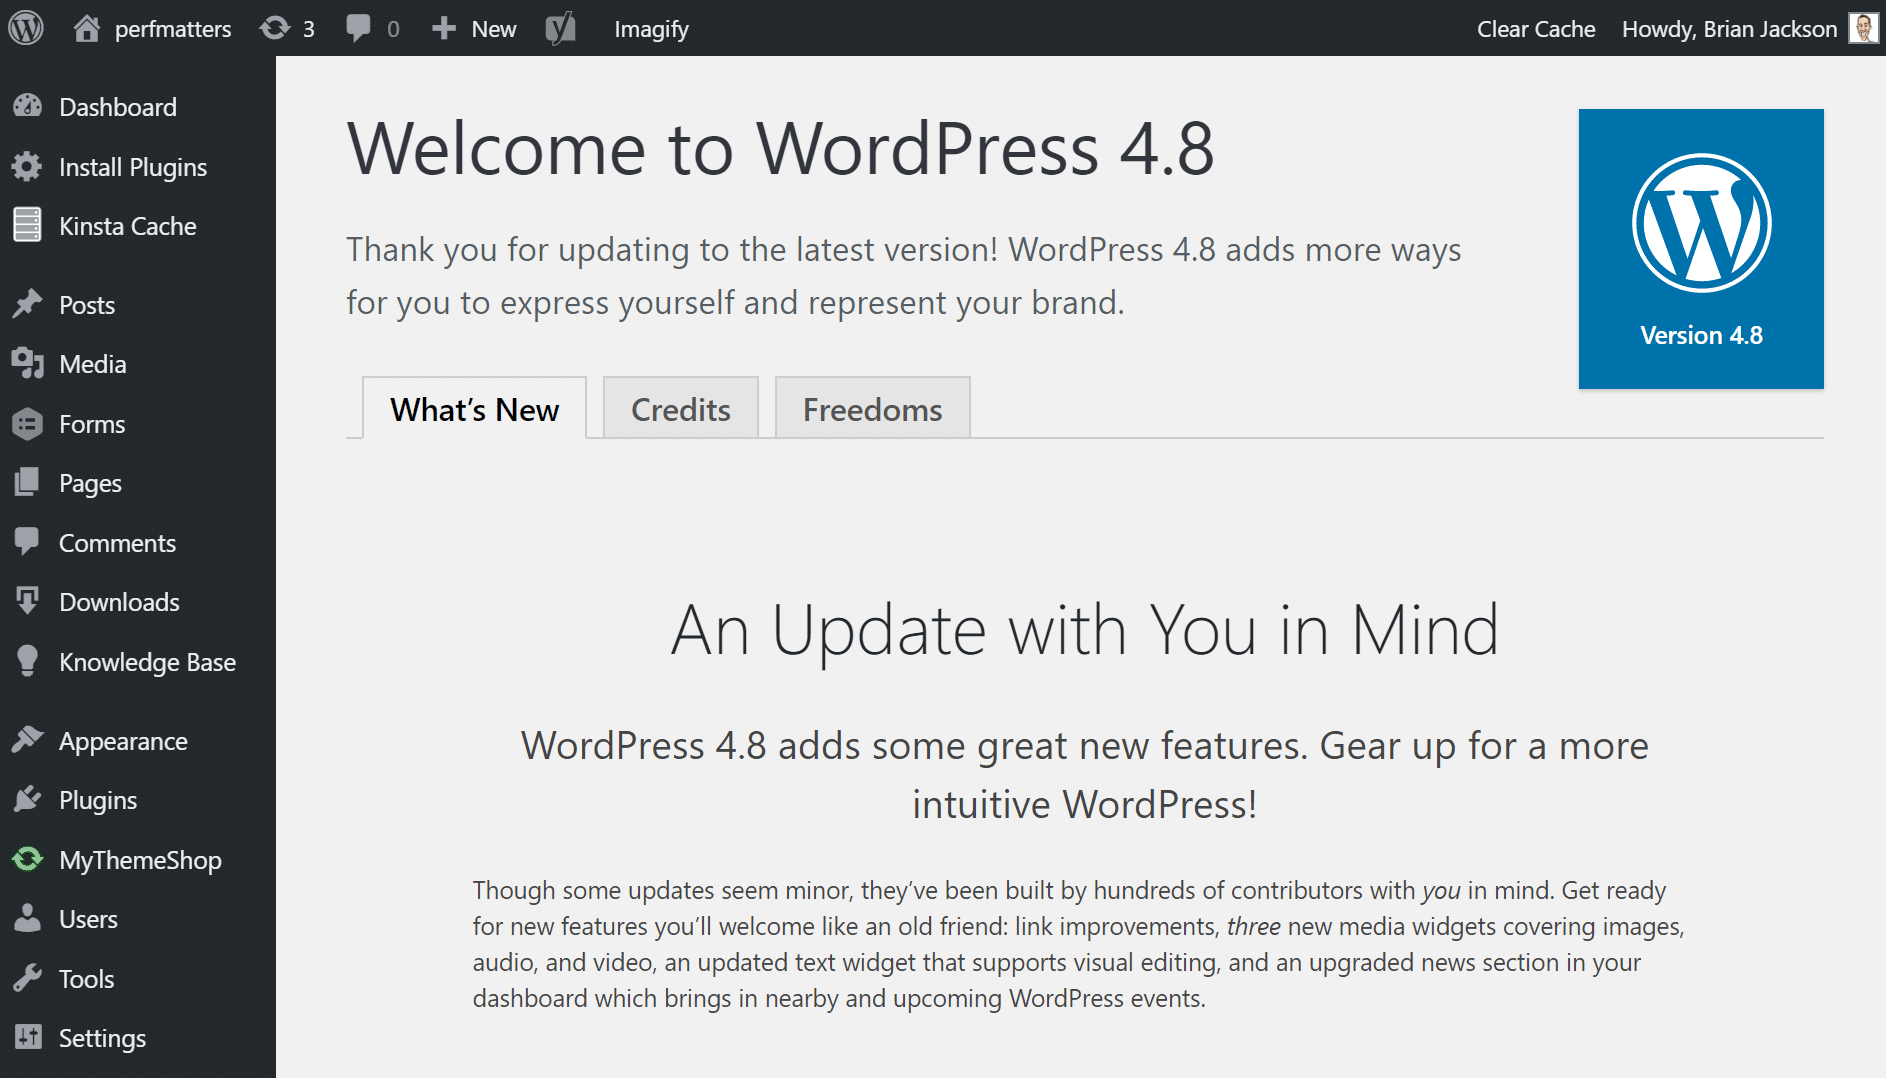 wordpress 4.8 update